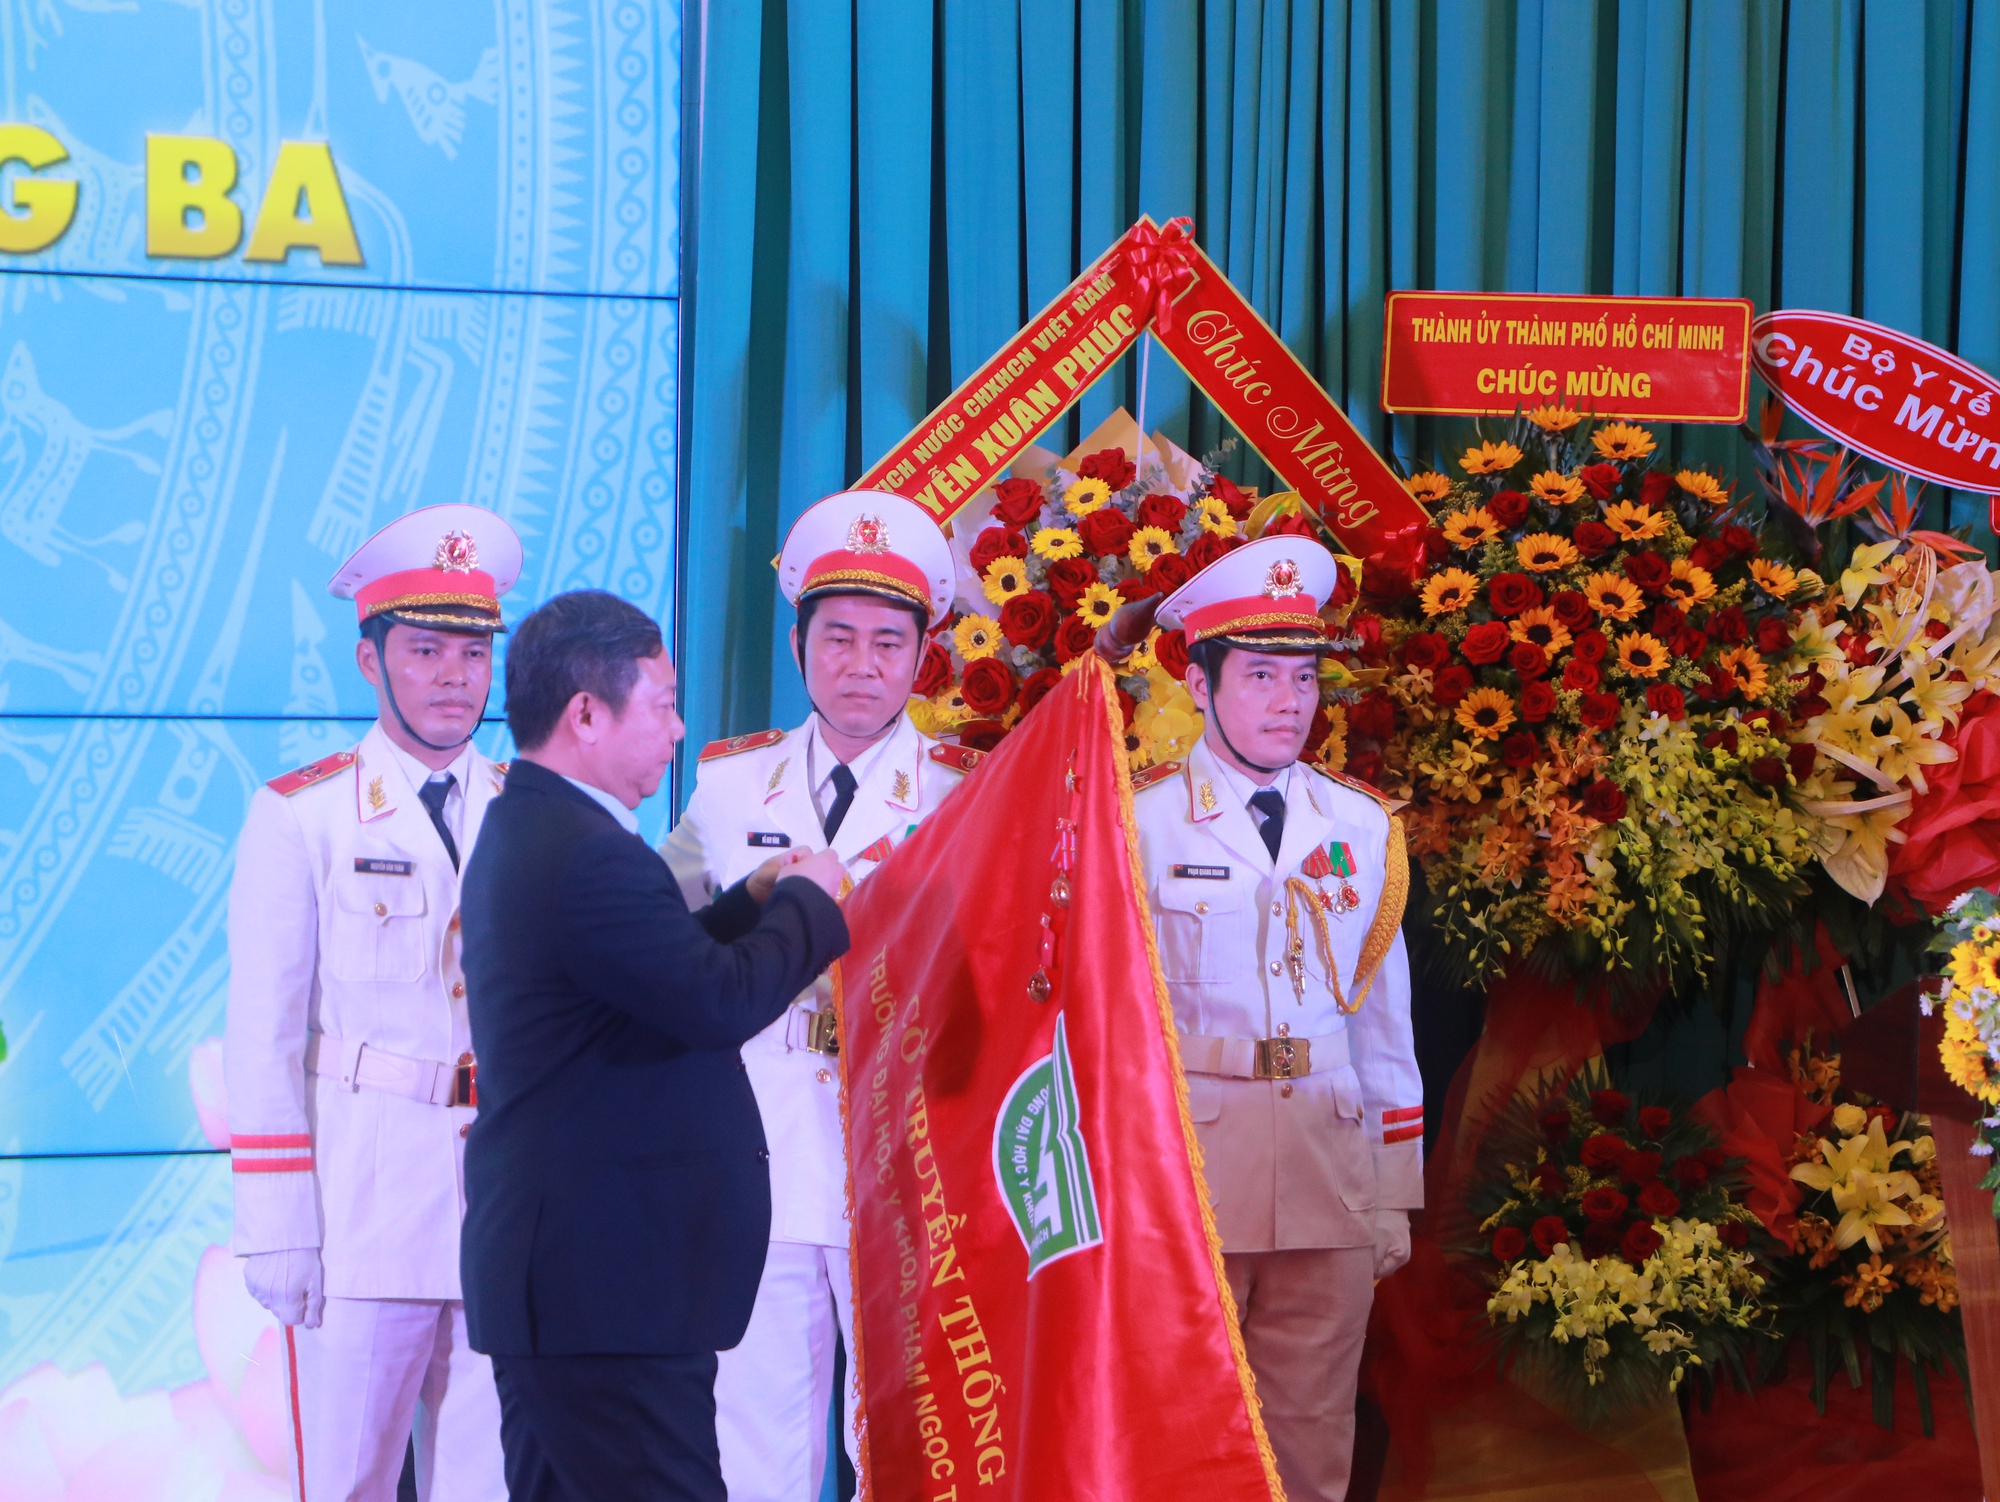 Trường ĐHYK Phạm Ngọc Thạch nhận khen thưởng kép cấp Nhà nước - Ảnh 3.